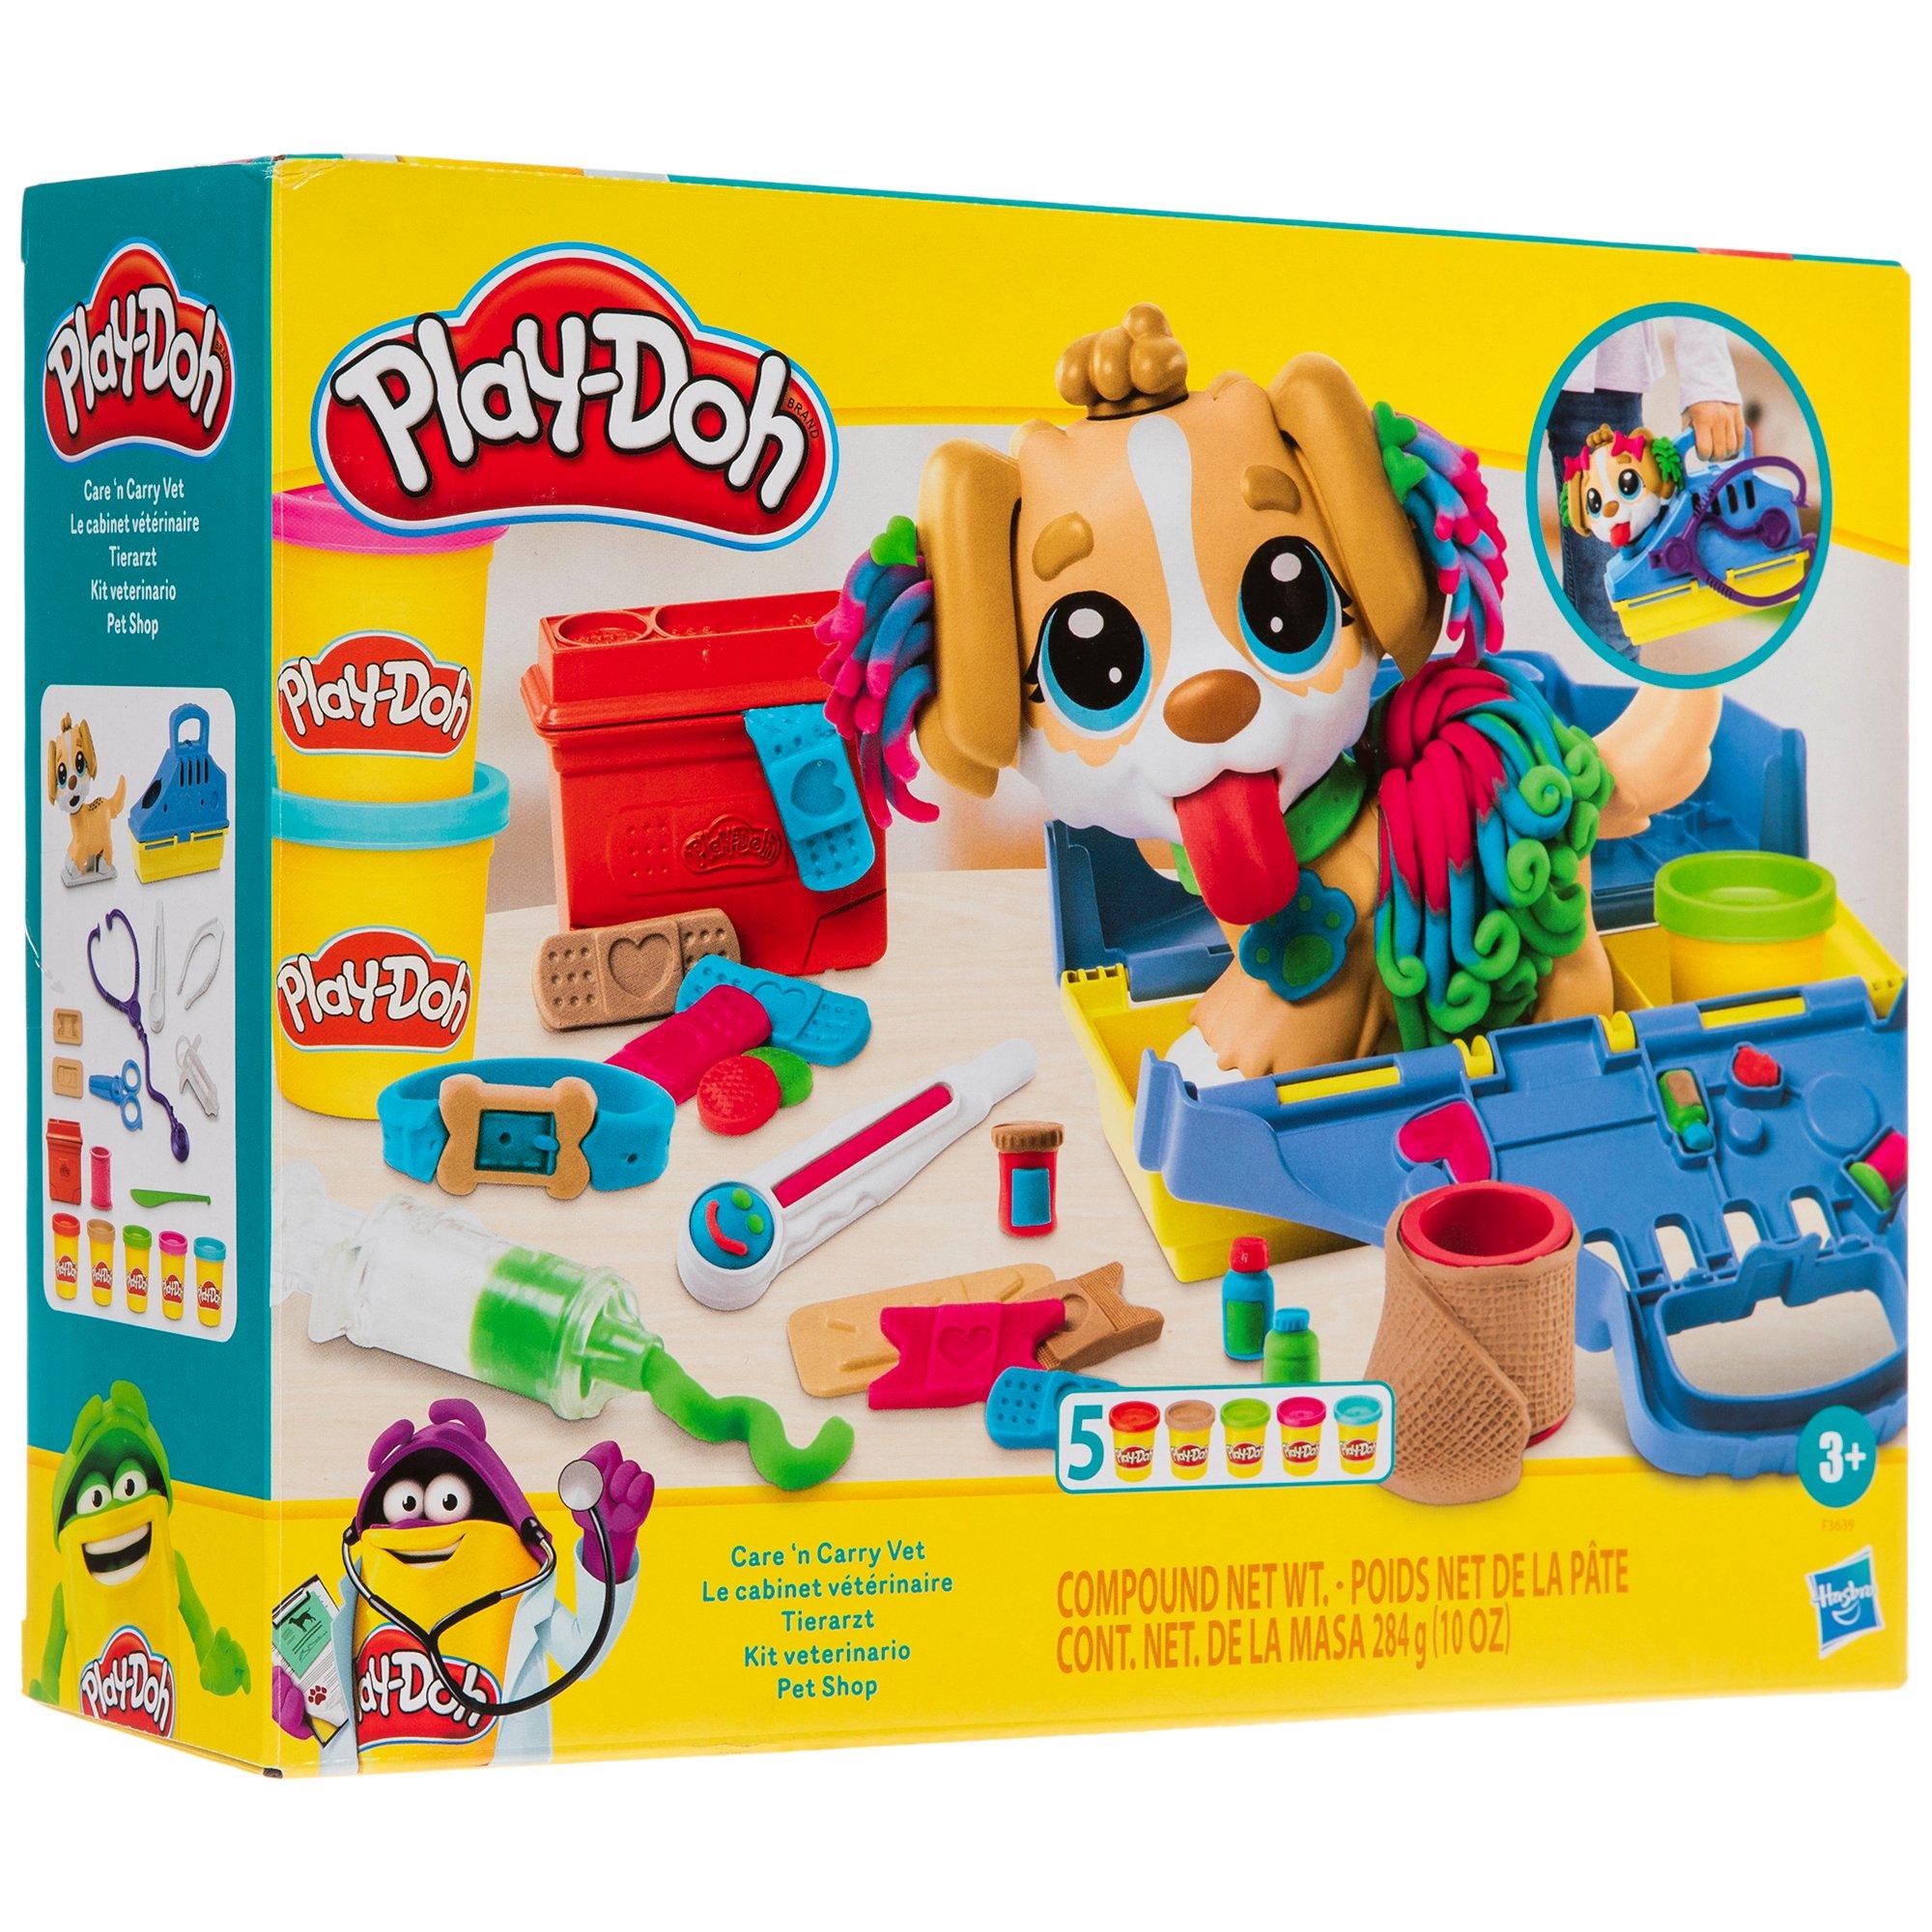 Play-Doh Care & Carry Vet Kit, Hobby Lobby